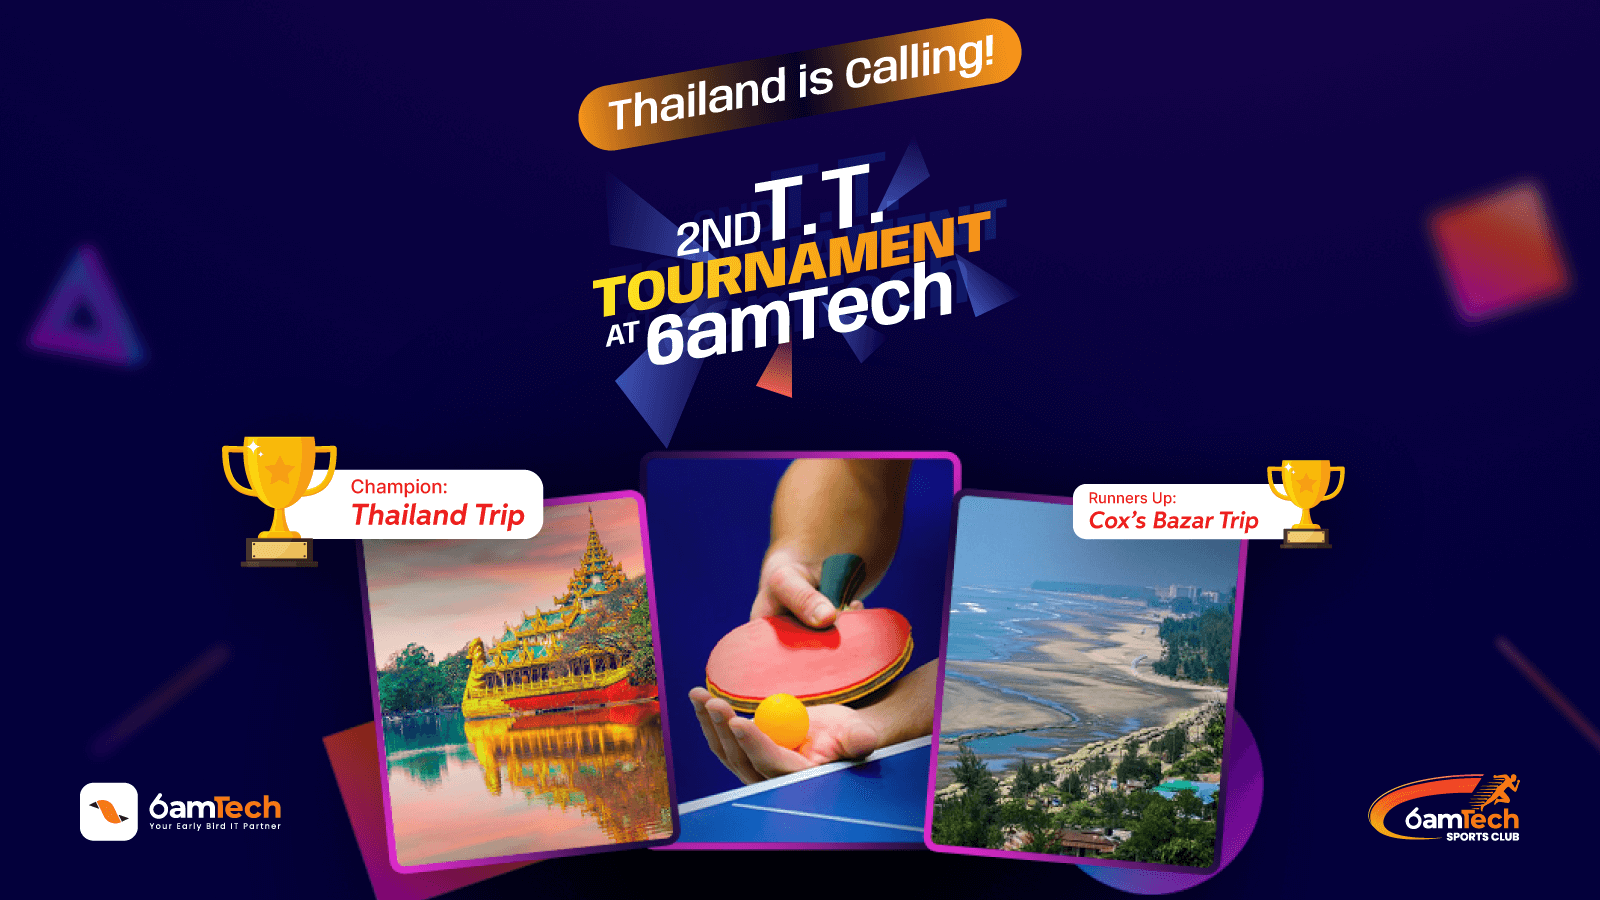 6amTech Launches TT Tournament